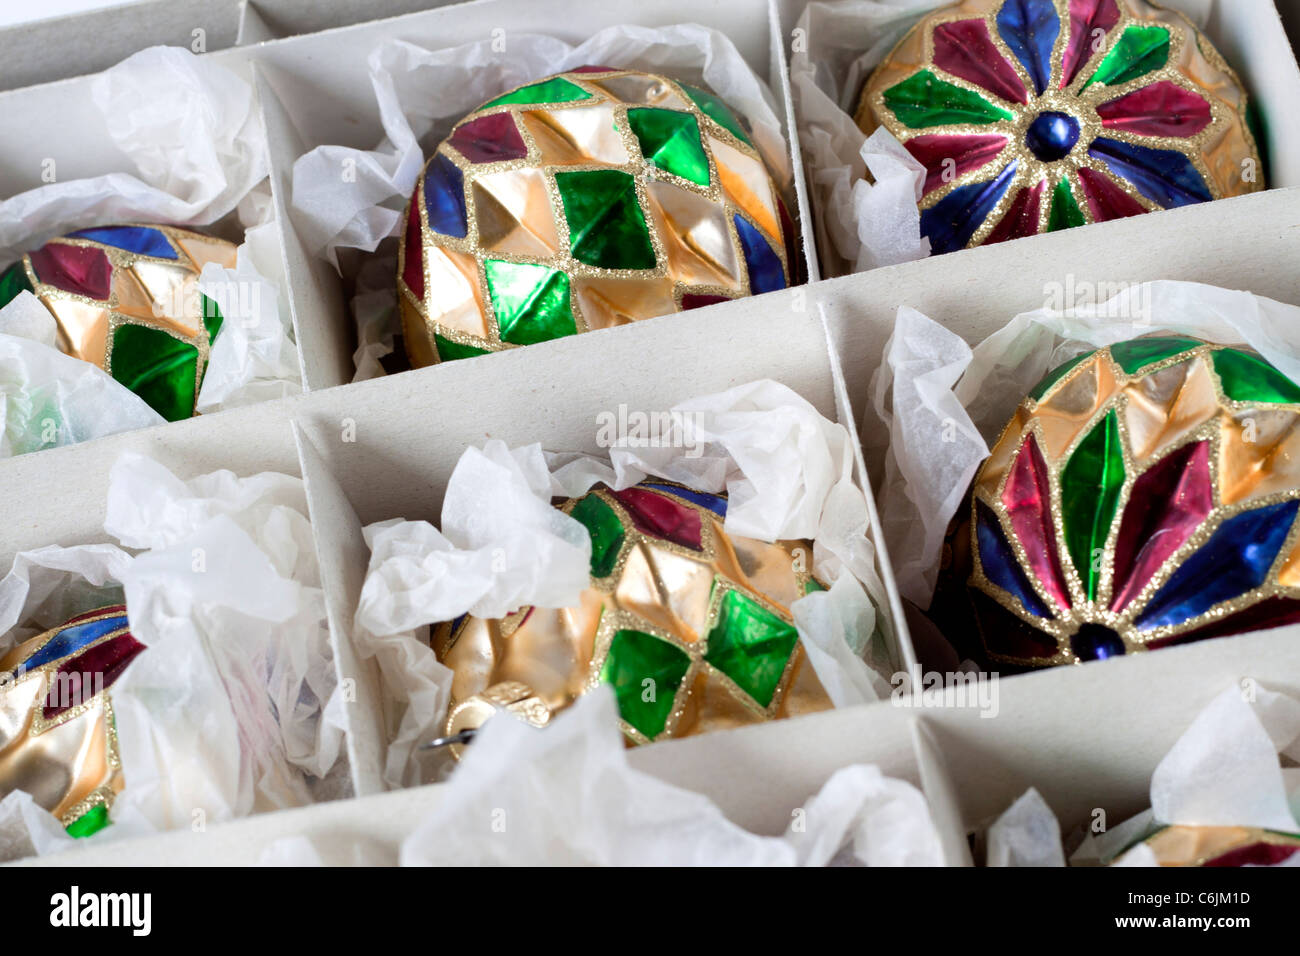 Décorations de Noël dans une boîte. Boules de verre soufflé à la main dans des couleurs rouge bleu vert et or Banque D'Images